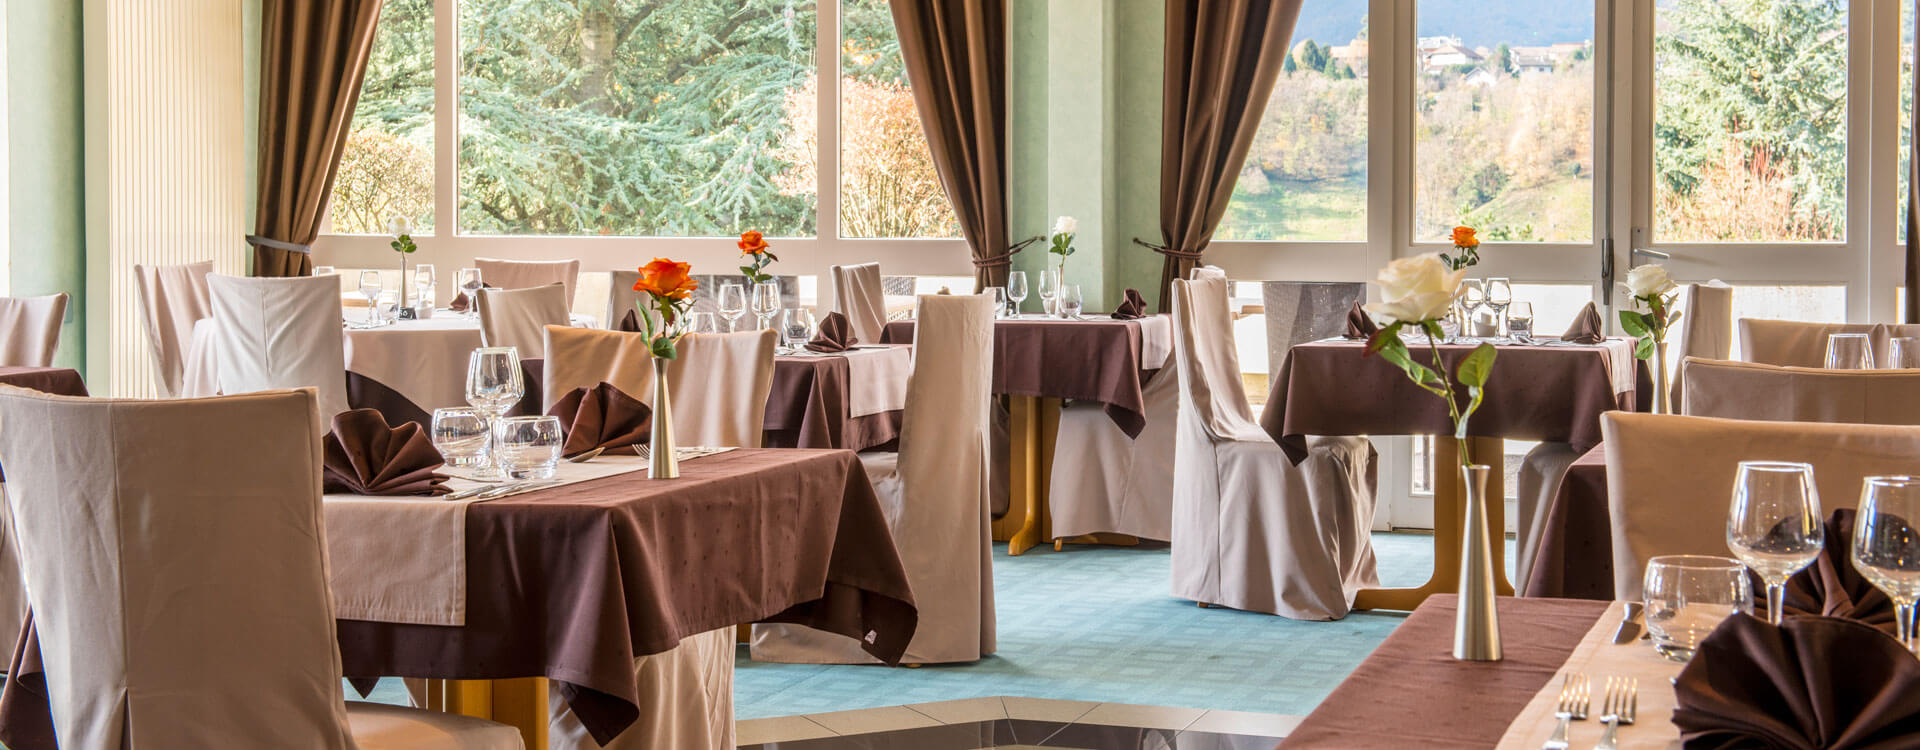 Restaurant - Hôtel & spa*** La Villa Marlioz à Aix-les-Bains